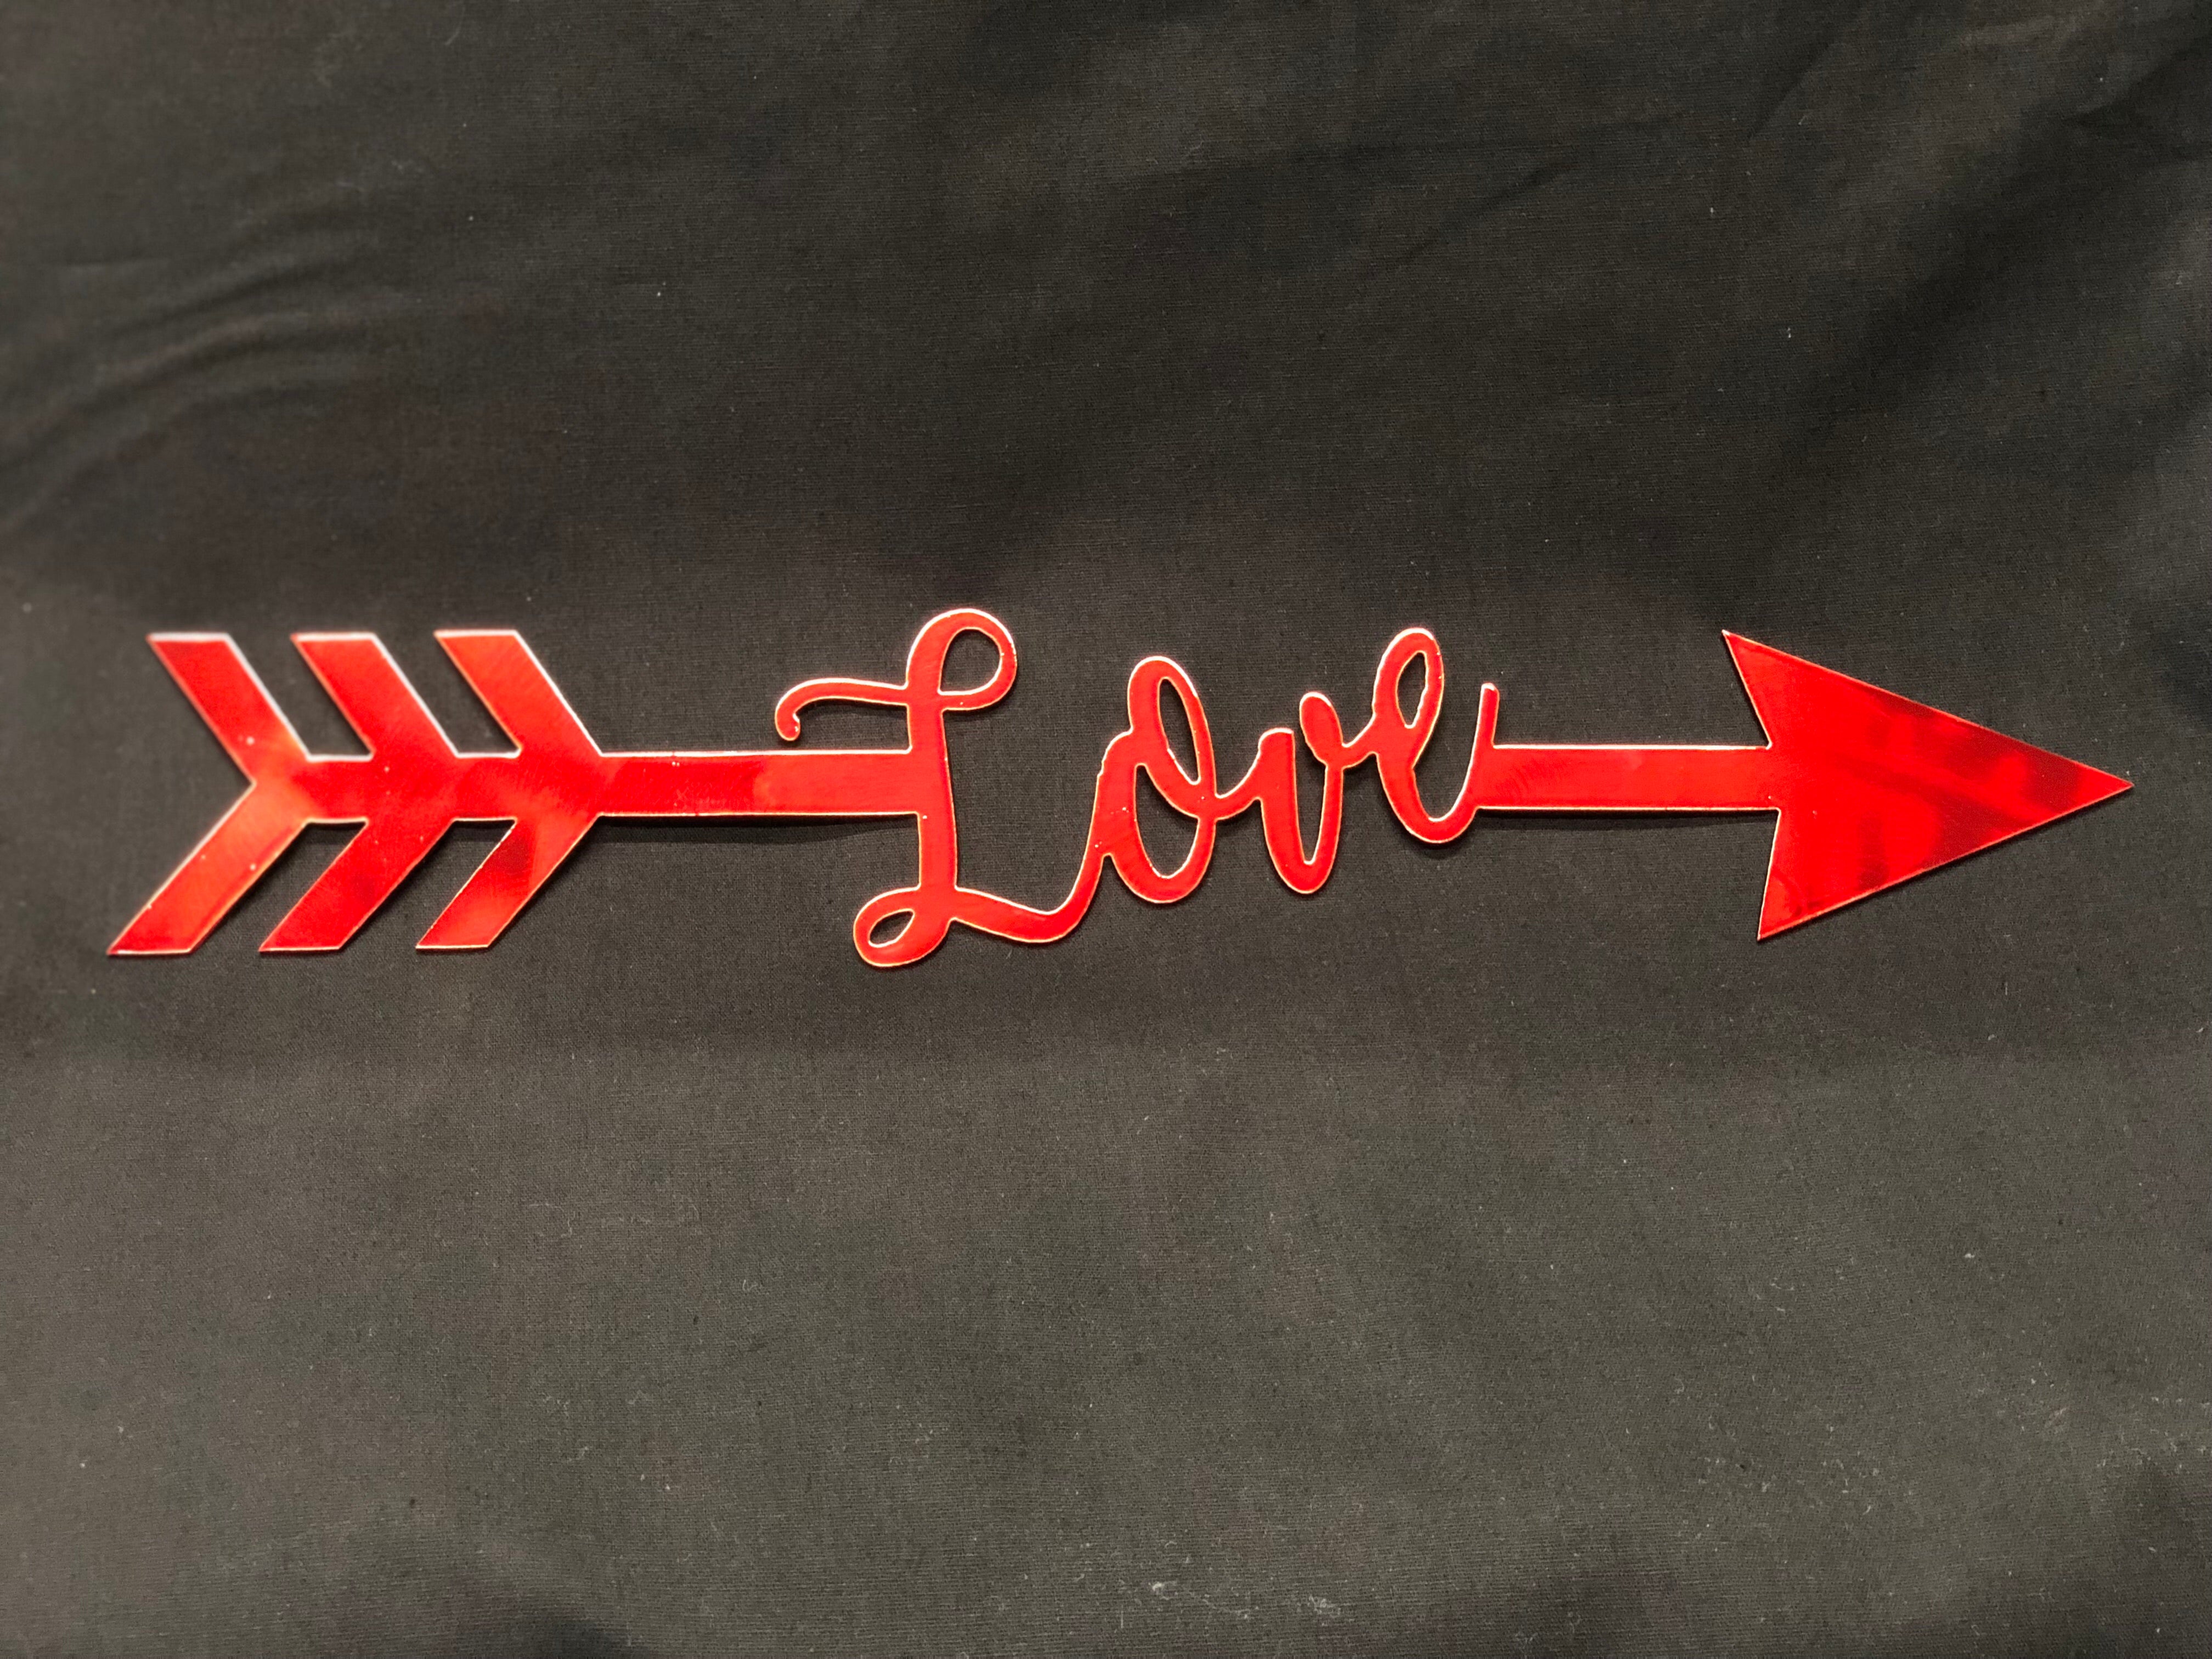 Love Arrow metal sign